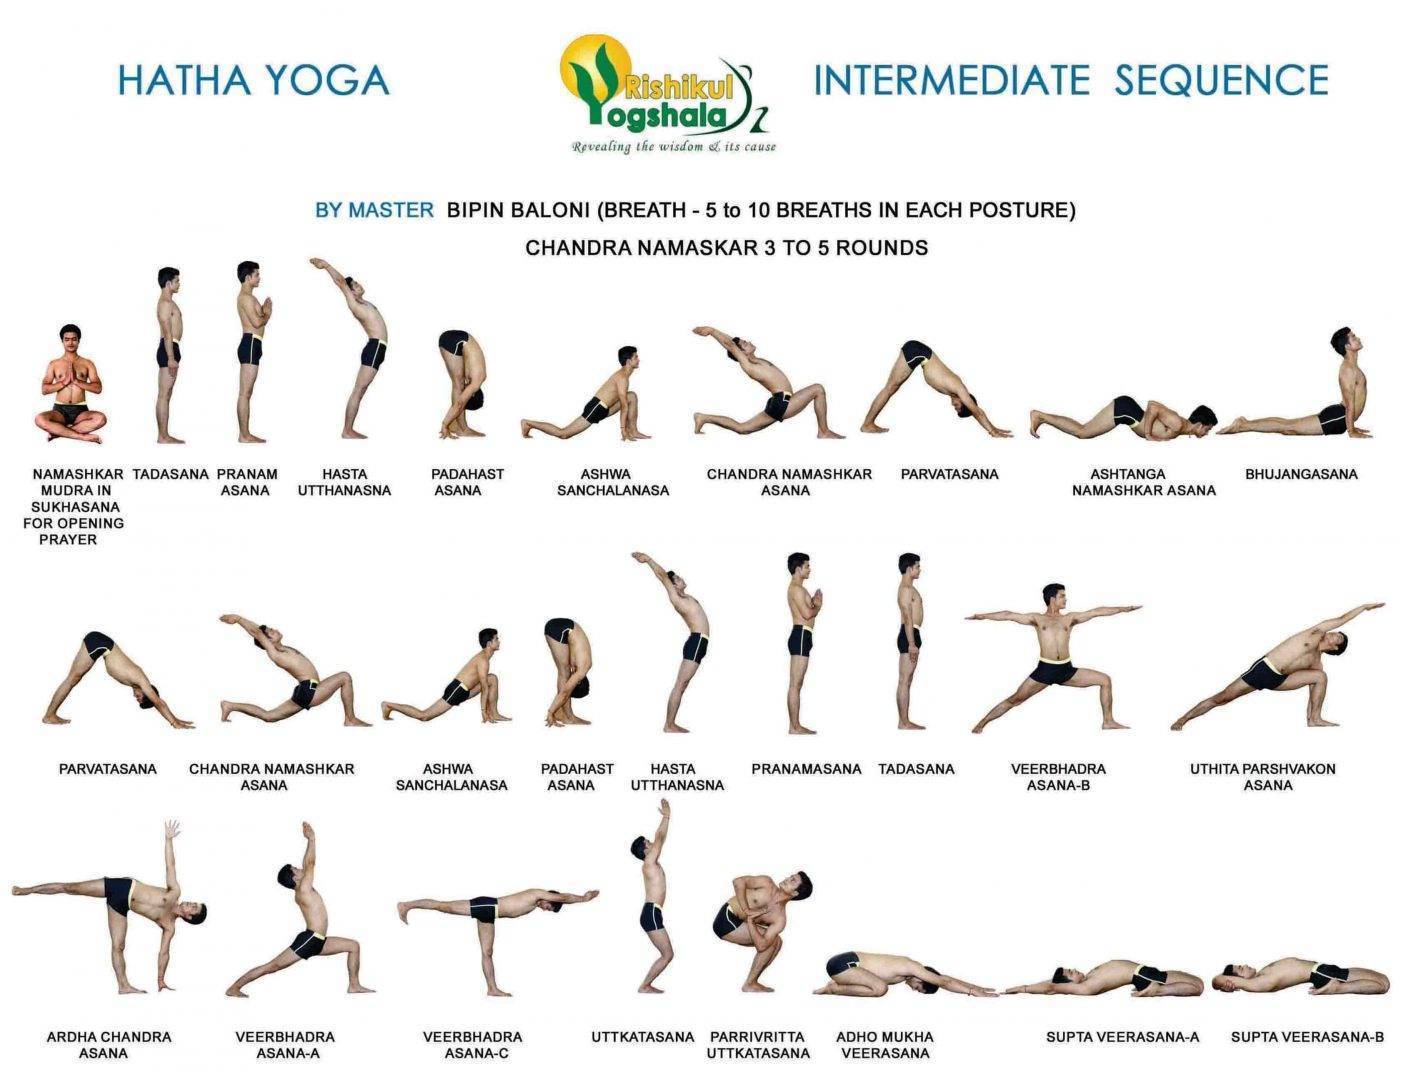 Хатха-йога для детей: польза и упражнения для начинающих